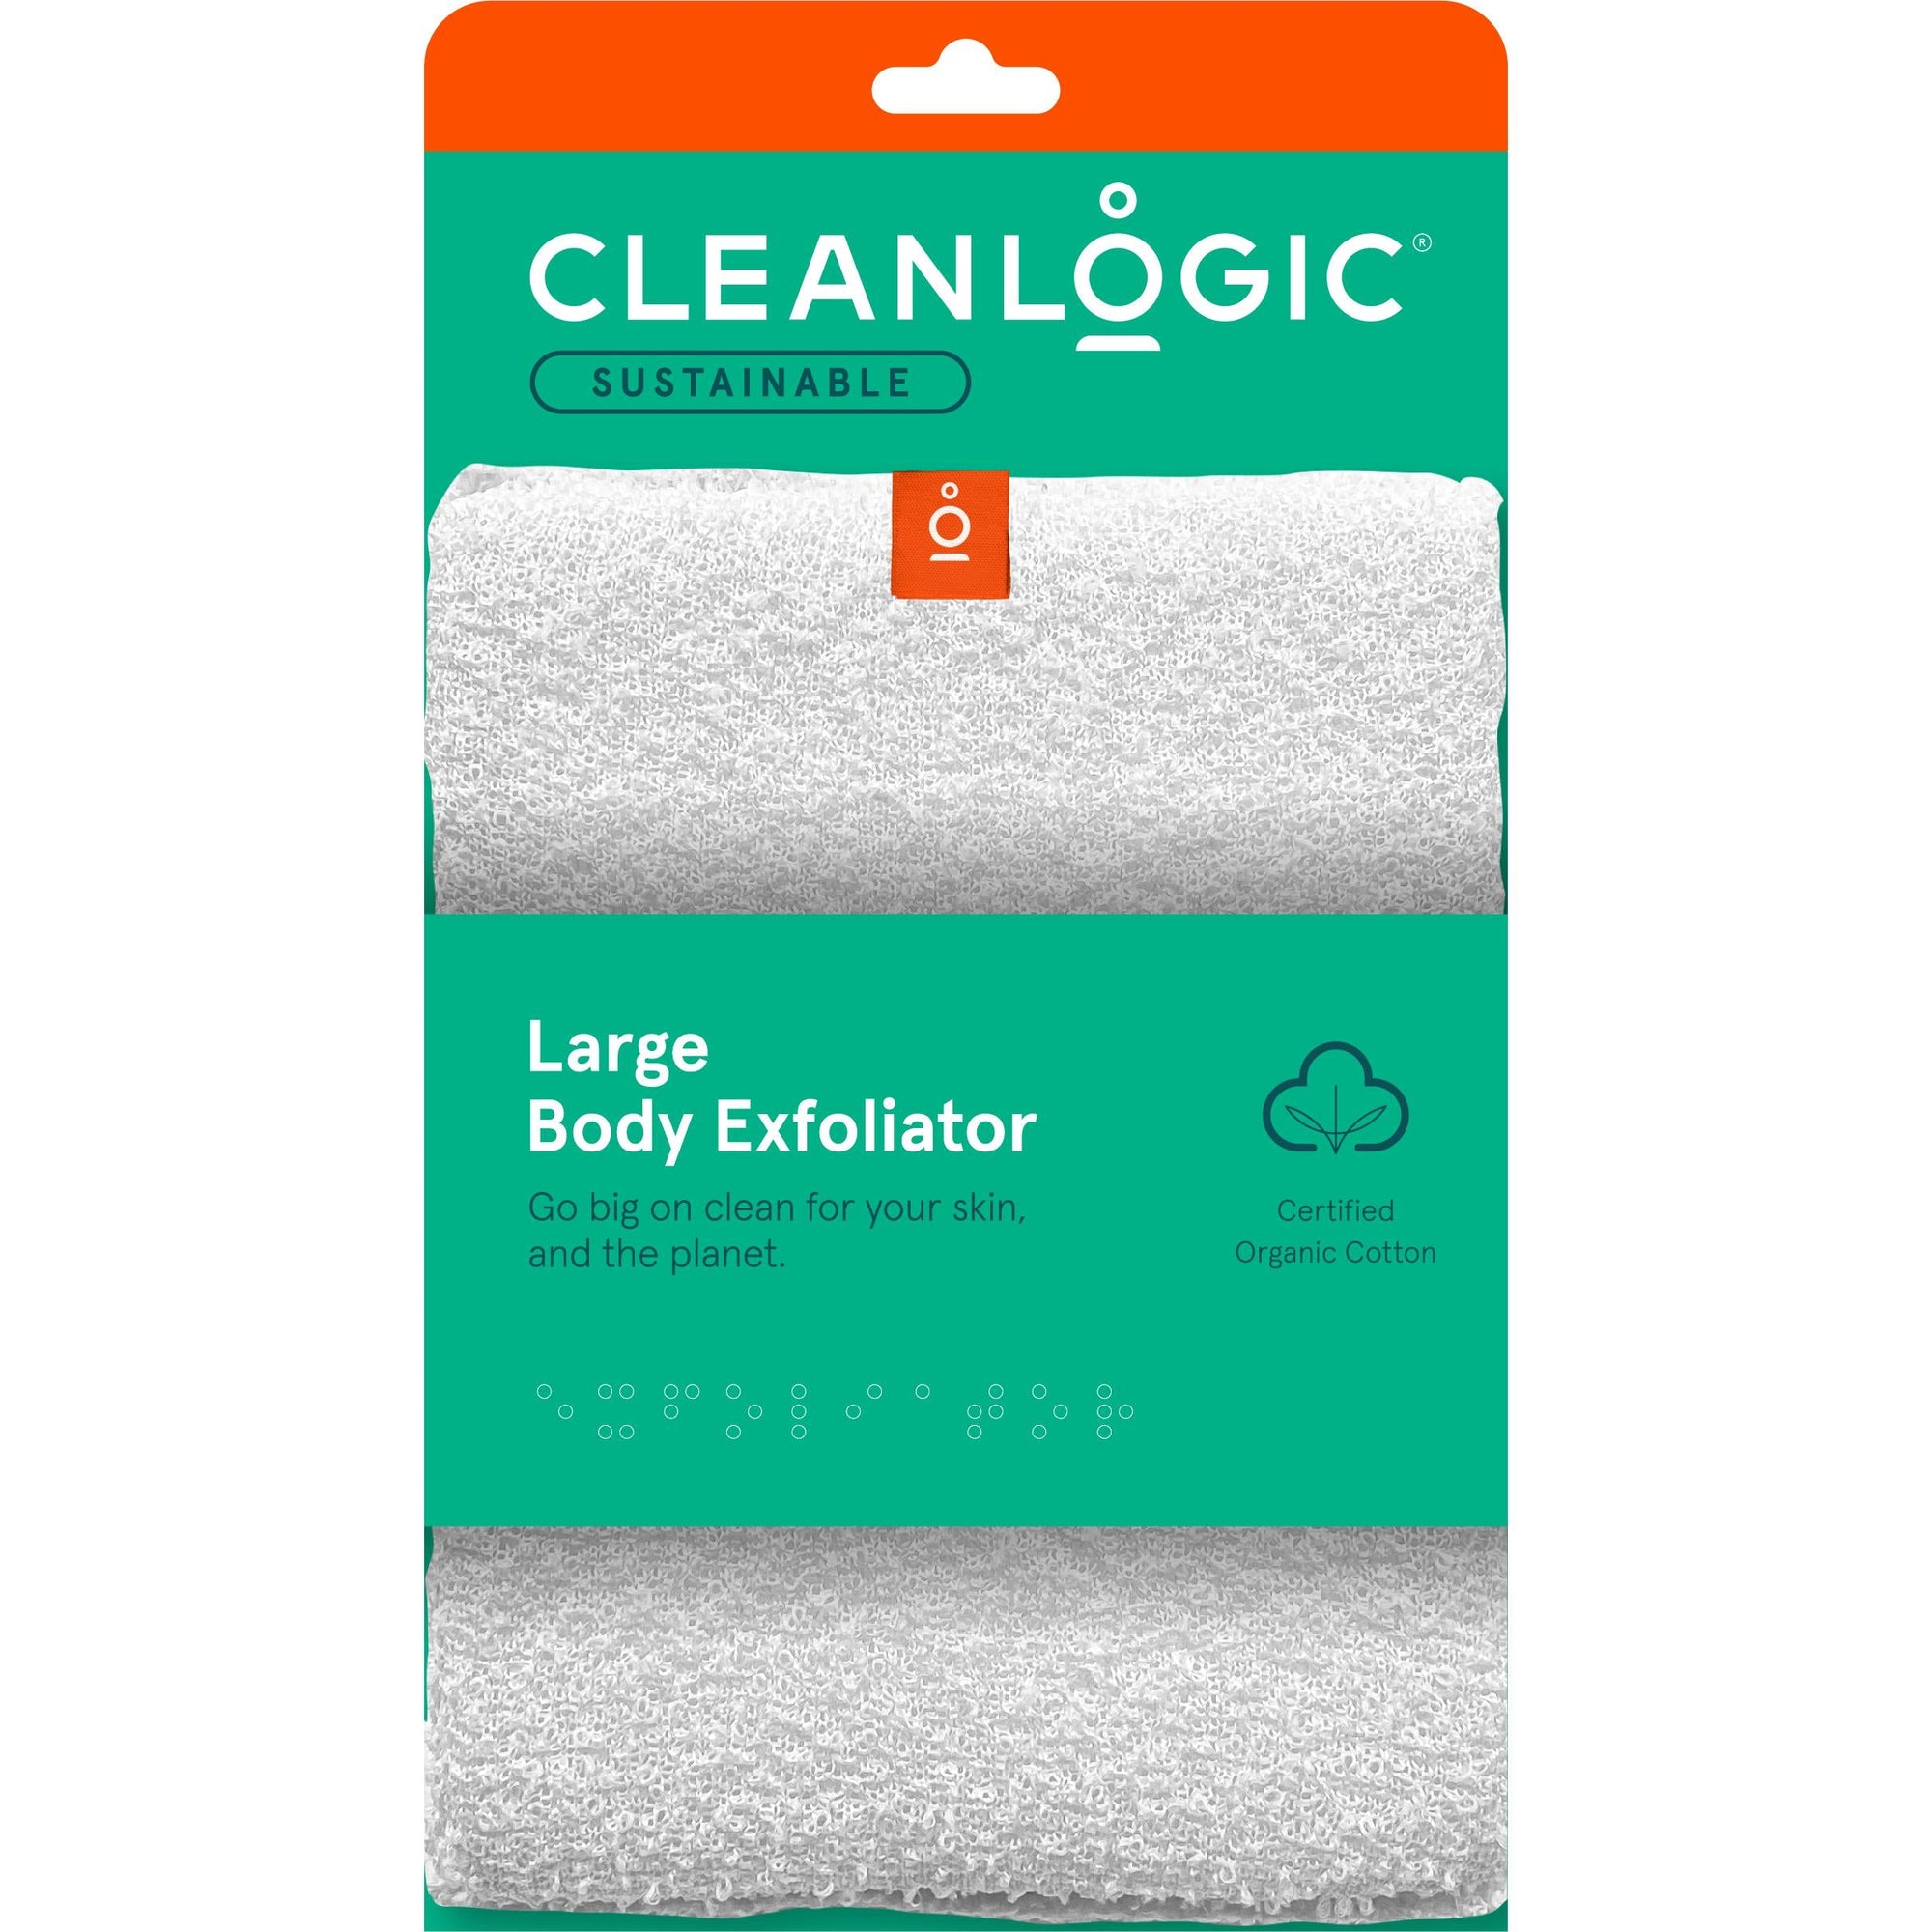 Cleanlogic Sustainable Large Body Exfoliator